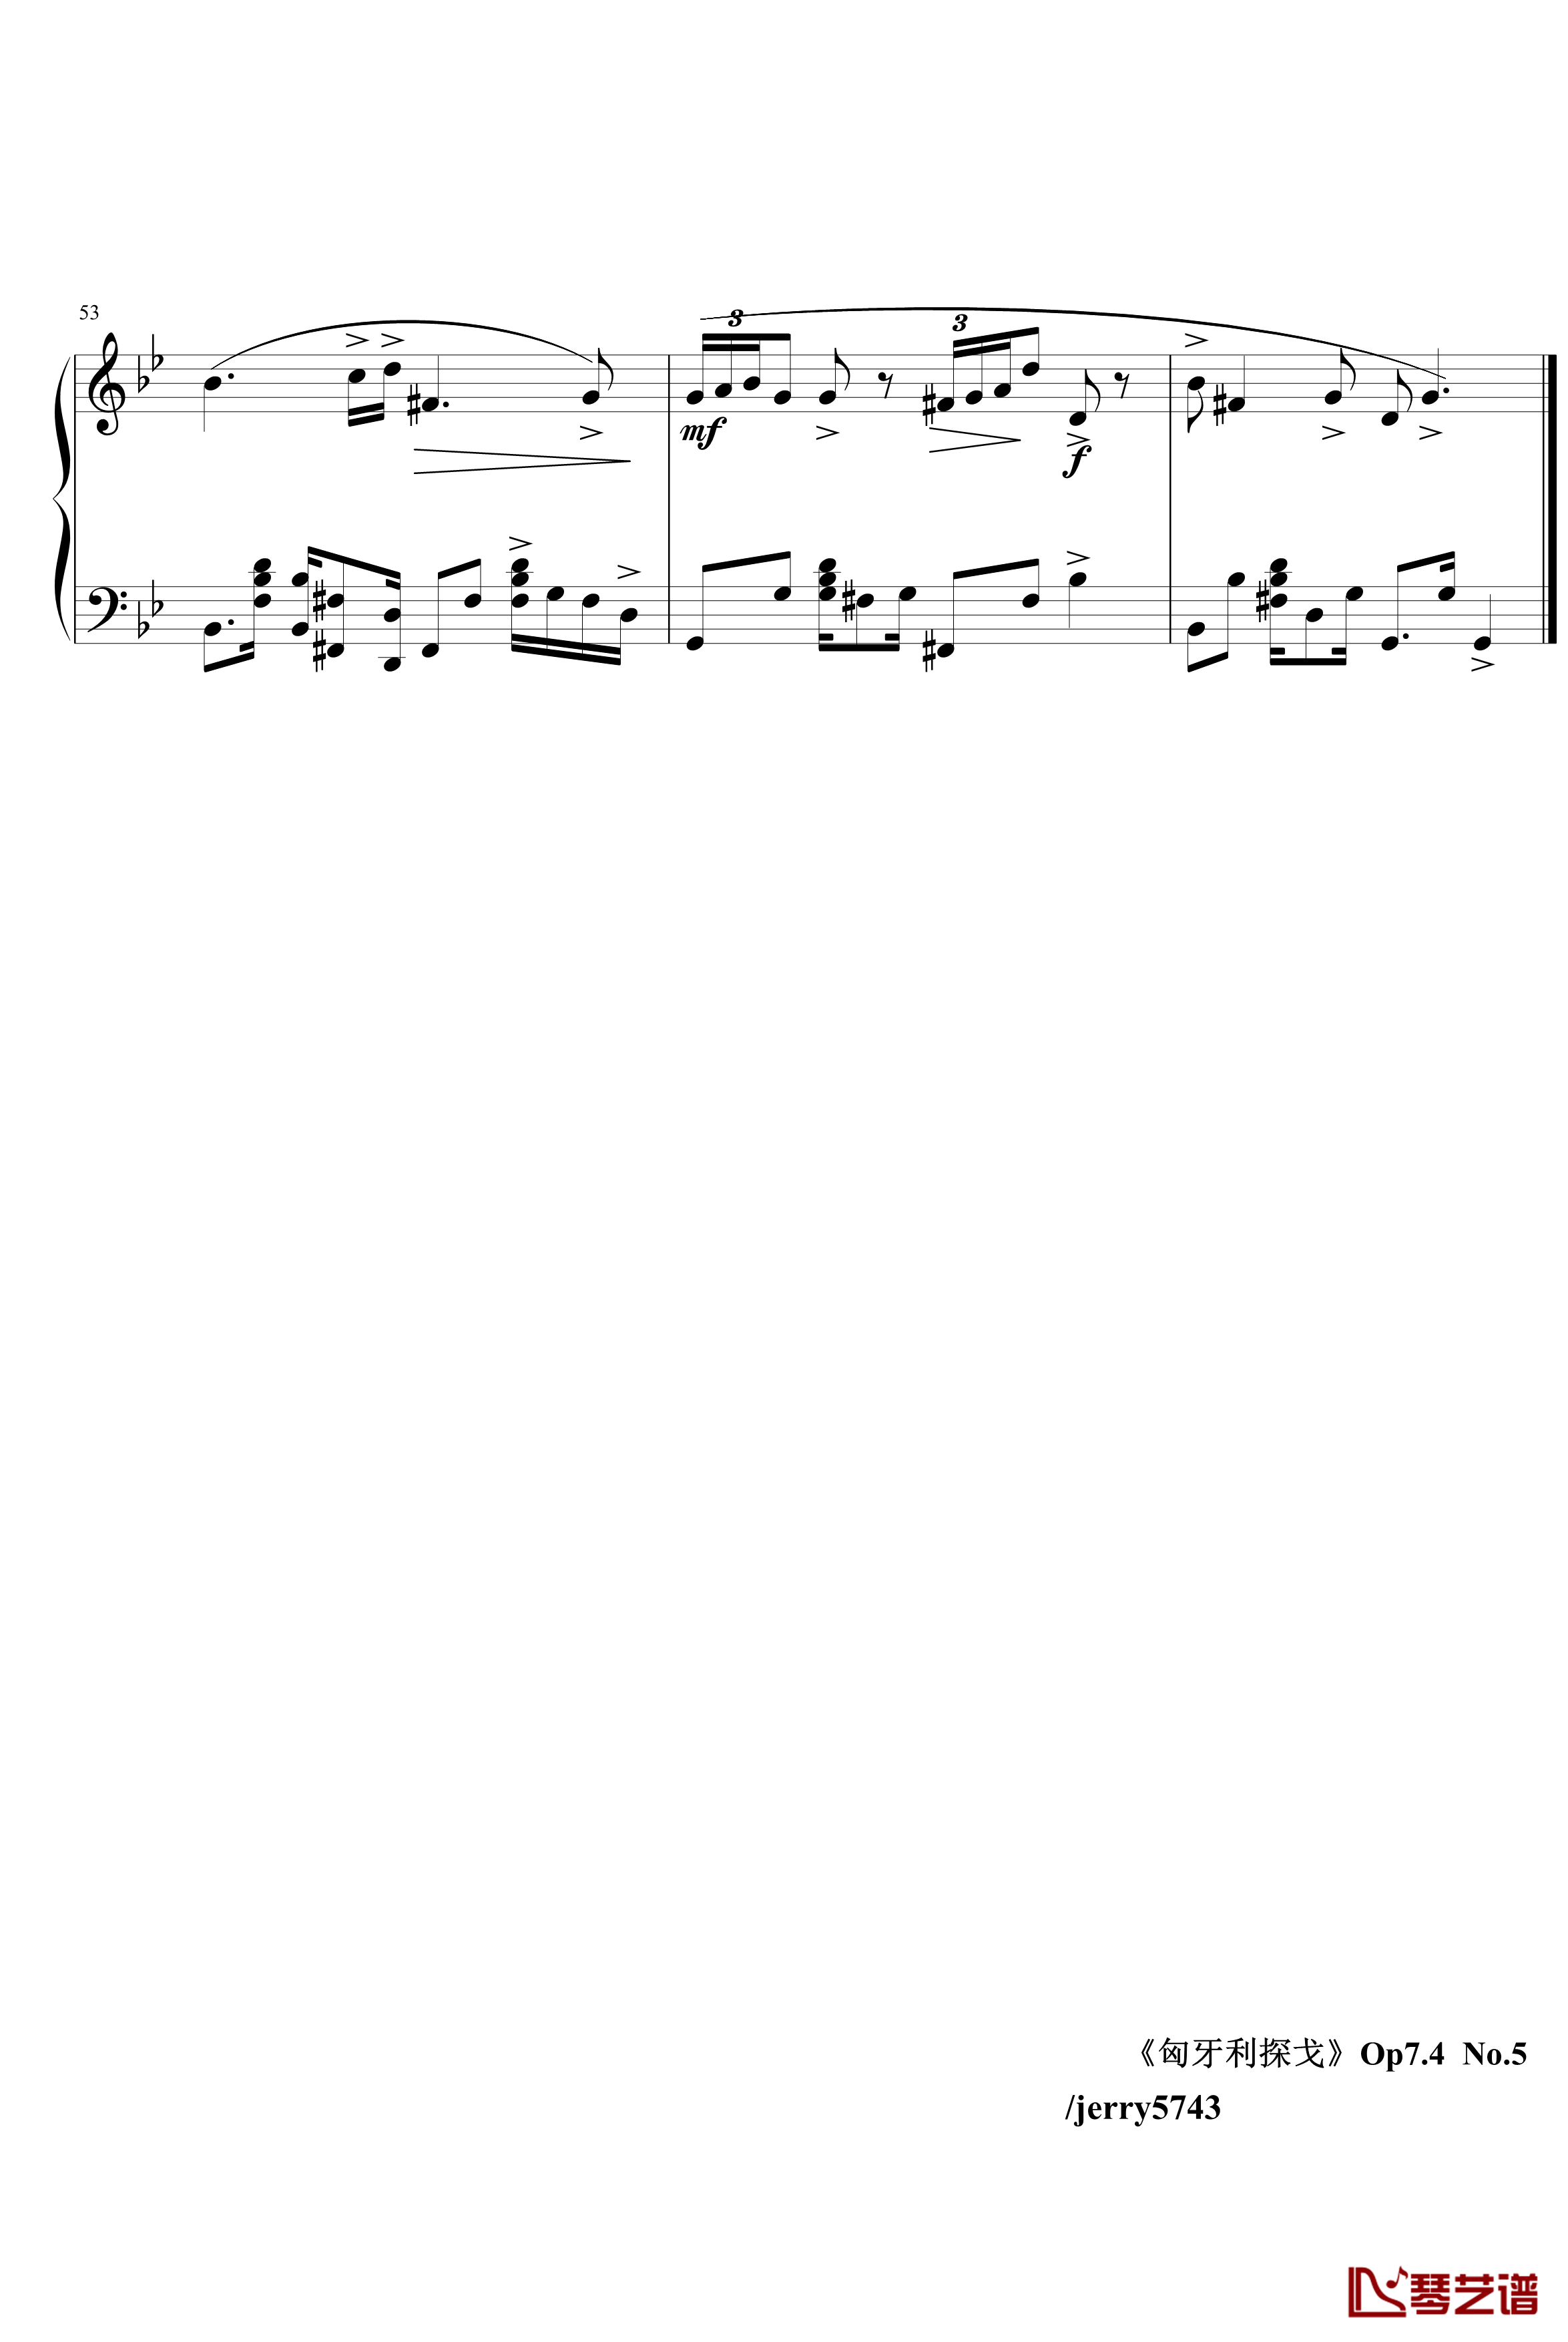 匈牙利探戈Op7.4钢琴谱-异国风情-jerry57435